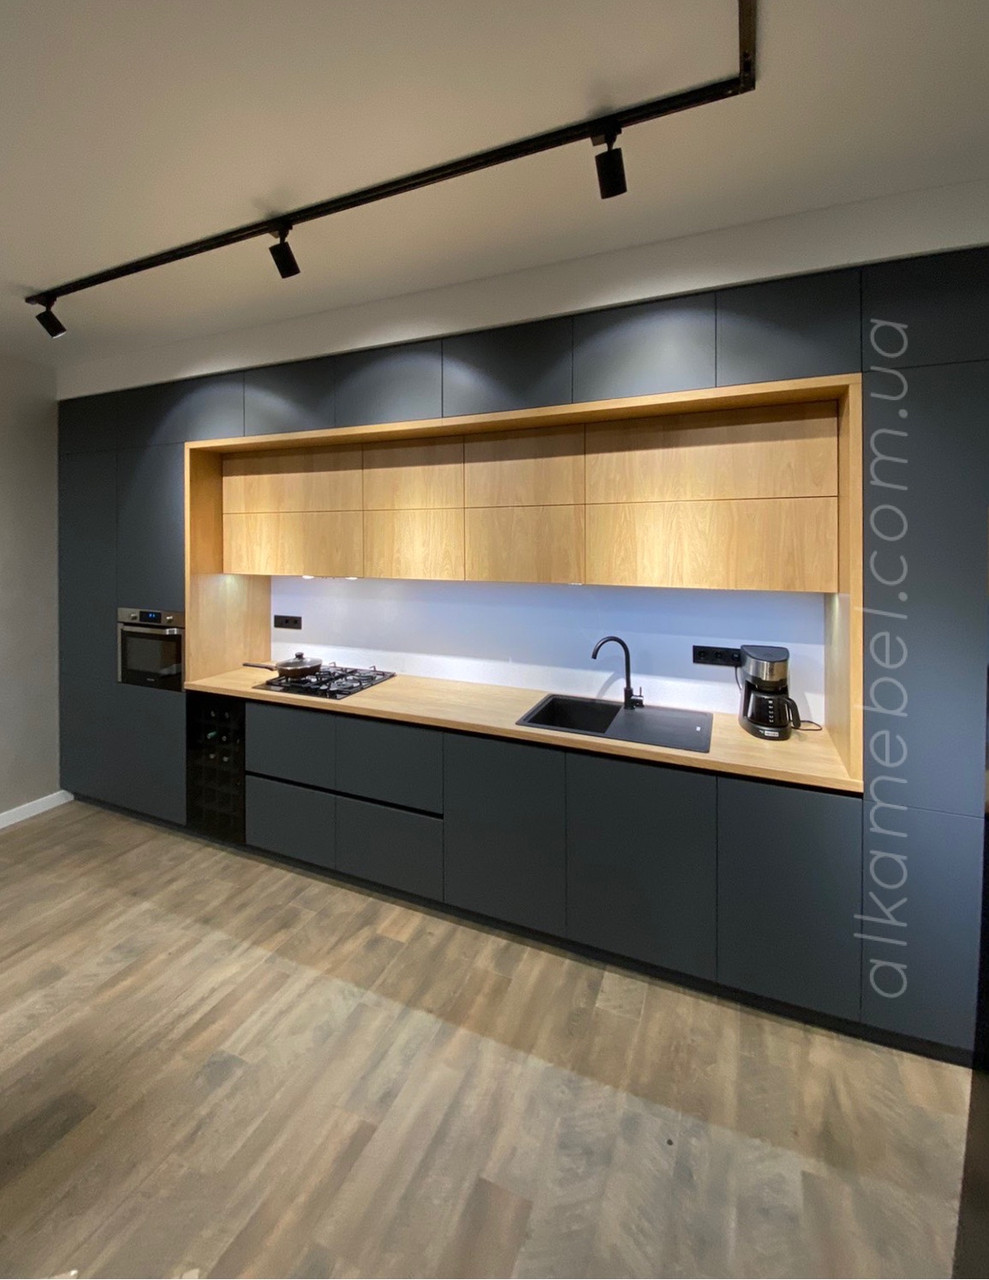 Двоповерхова Кухня на замовлення в сучасному стилі. Кухня під стелю. Кухня двоярусна. Кухня 2021 року, фото 1